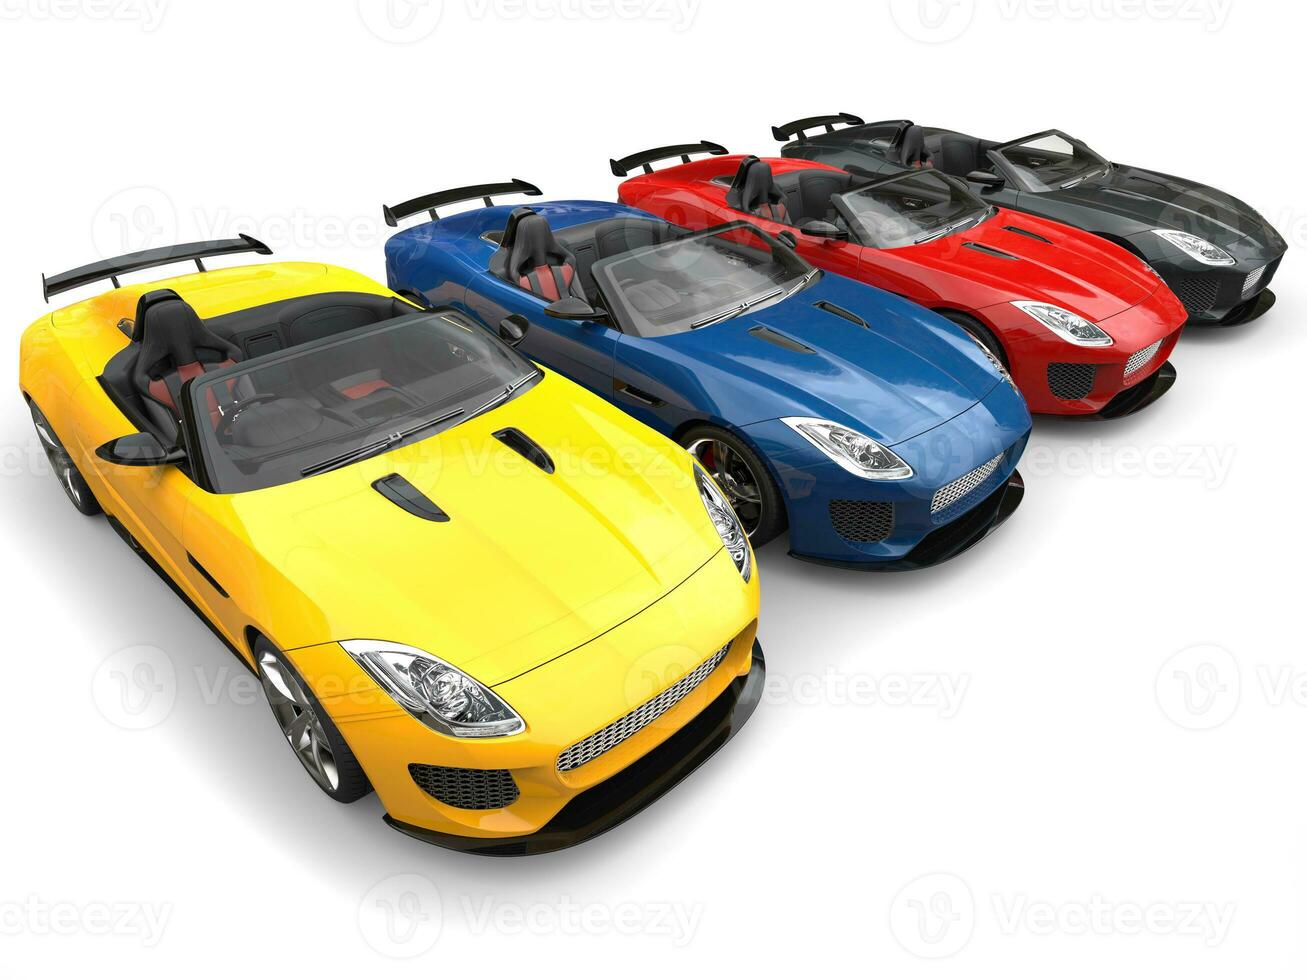 étourdissant convertible moderne des sports voitures dans divers couleurs photo